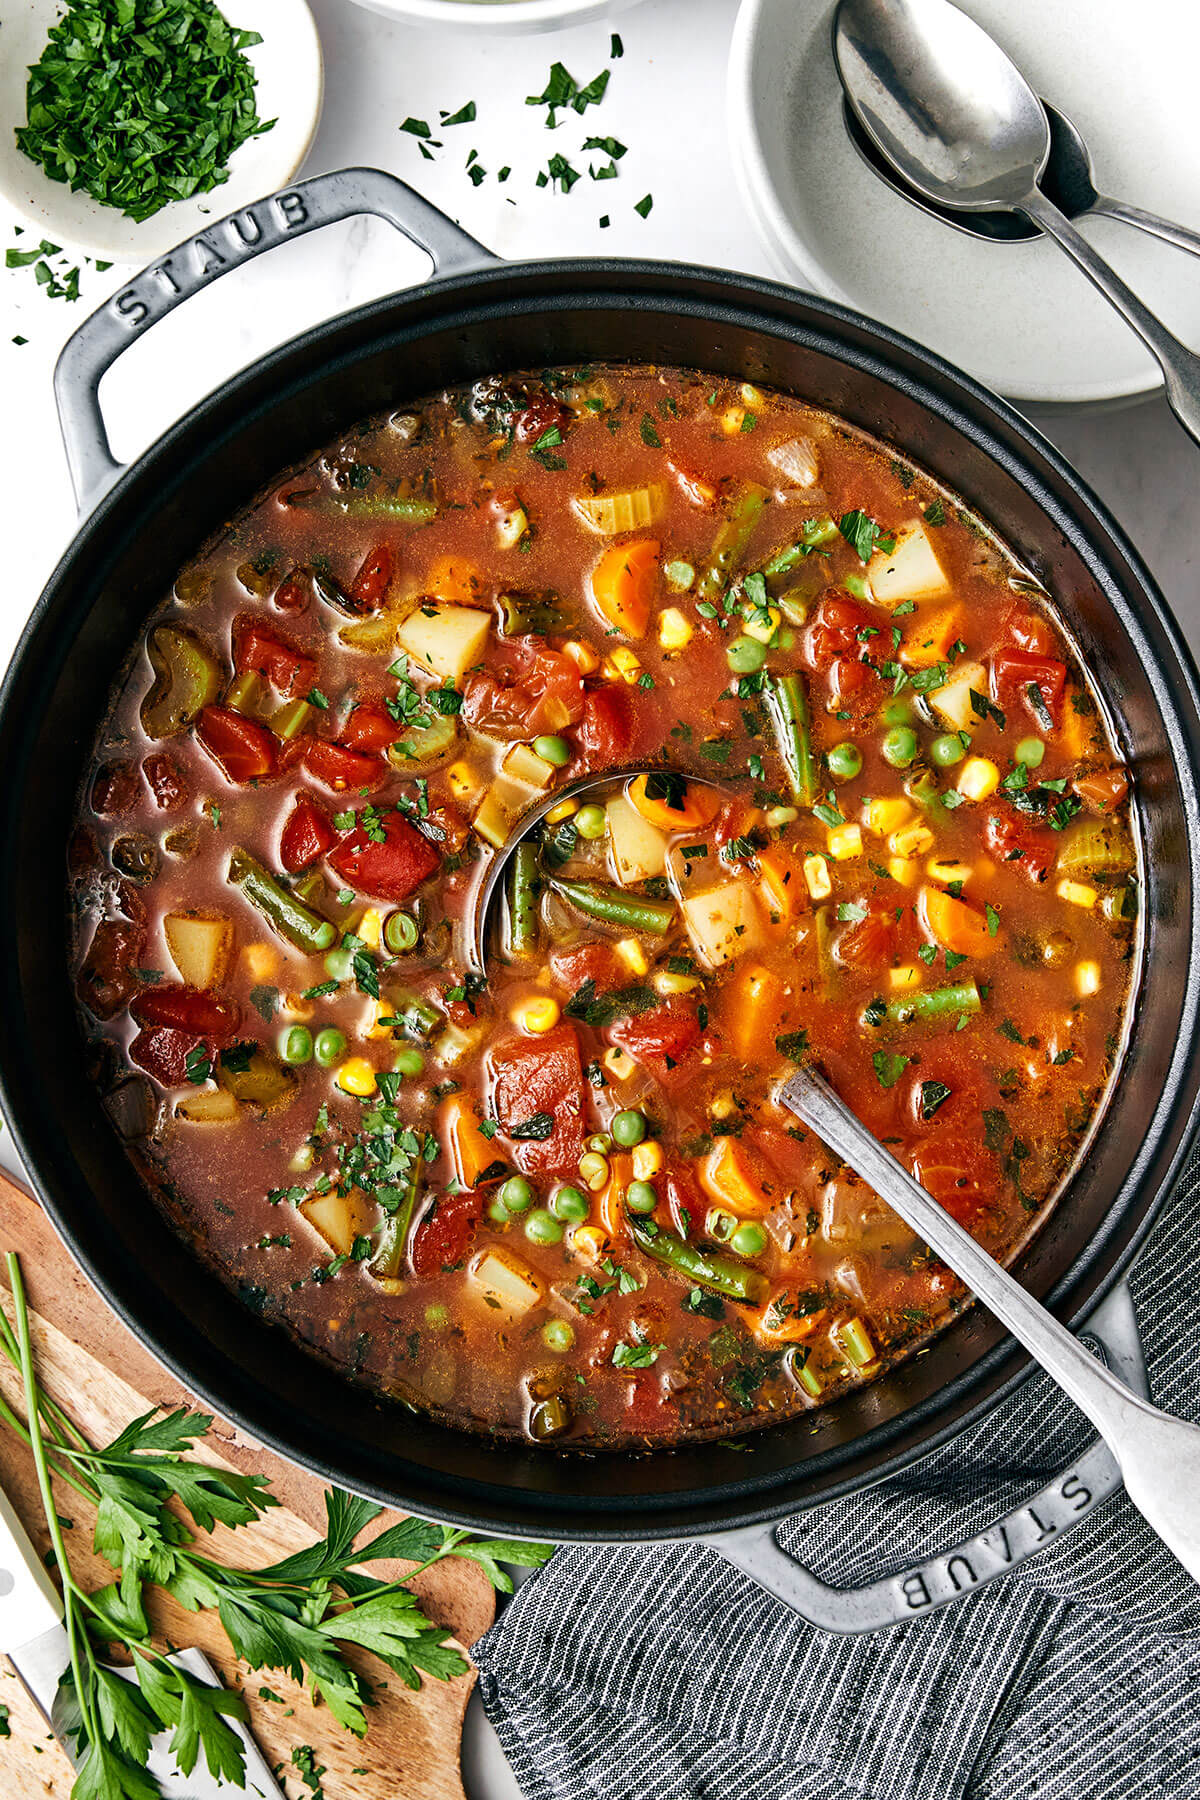 A big pot of vegetable soup